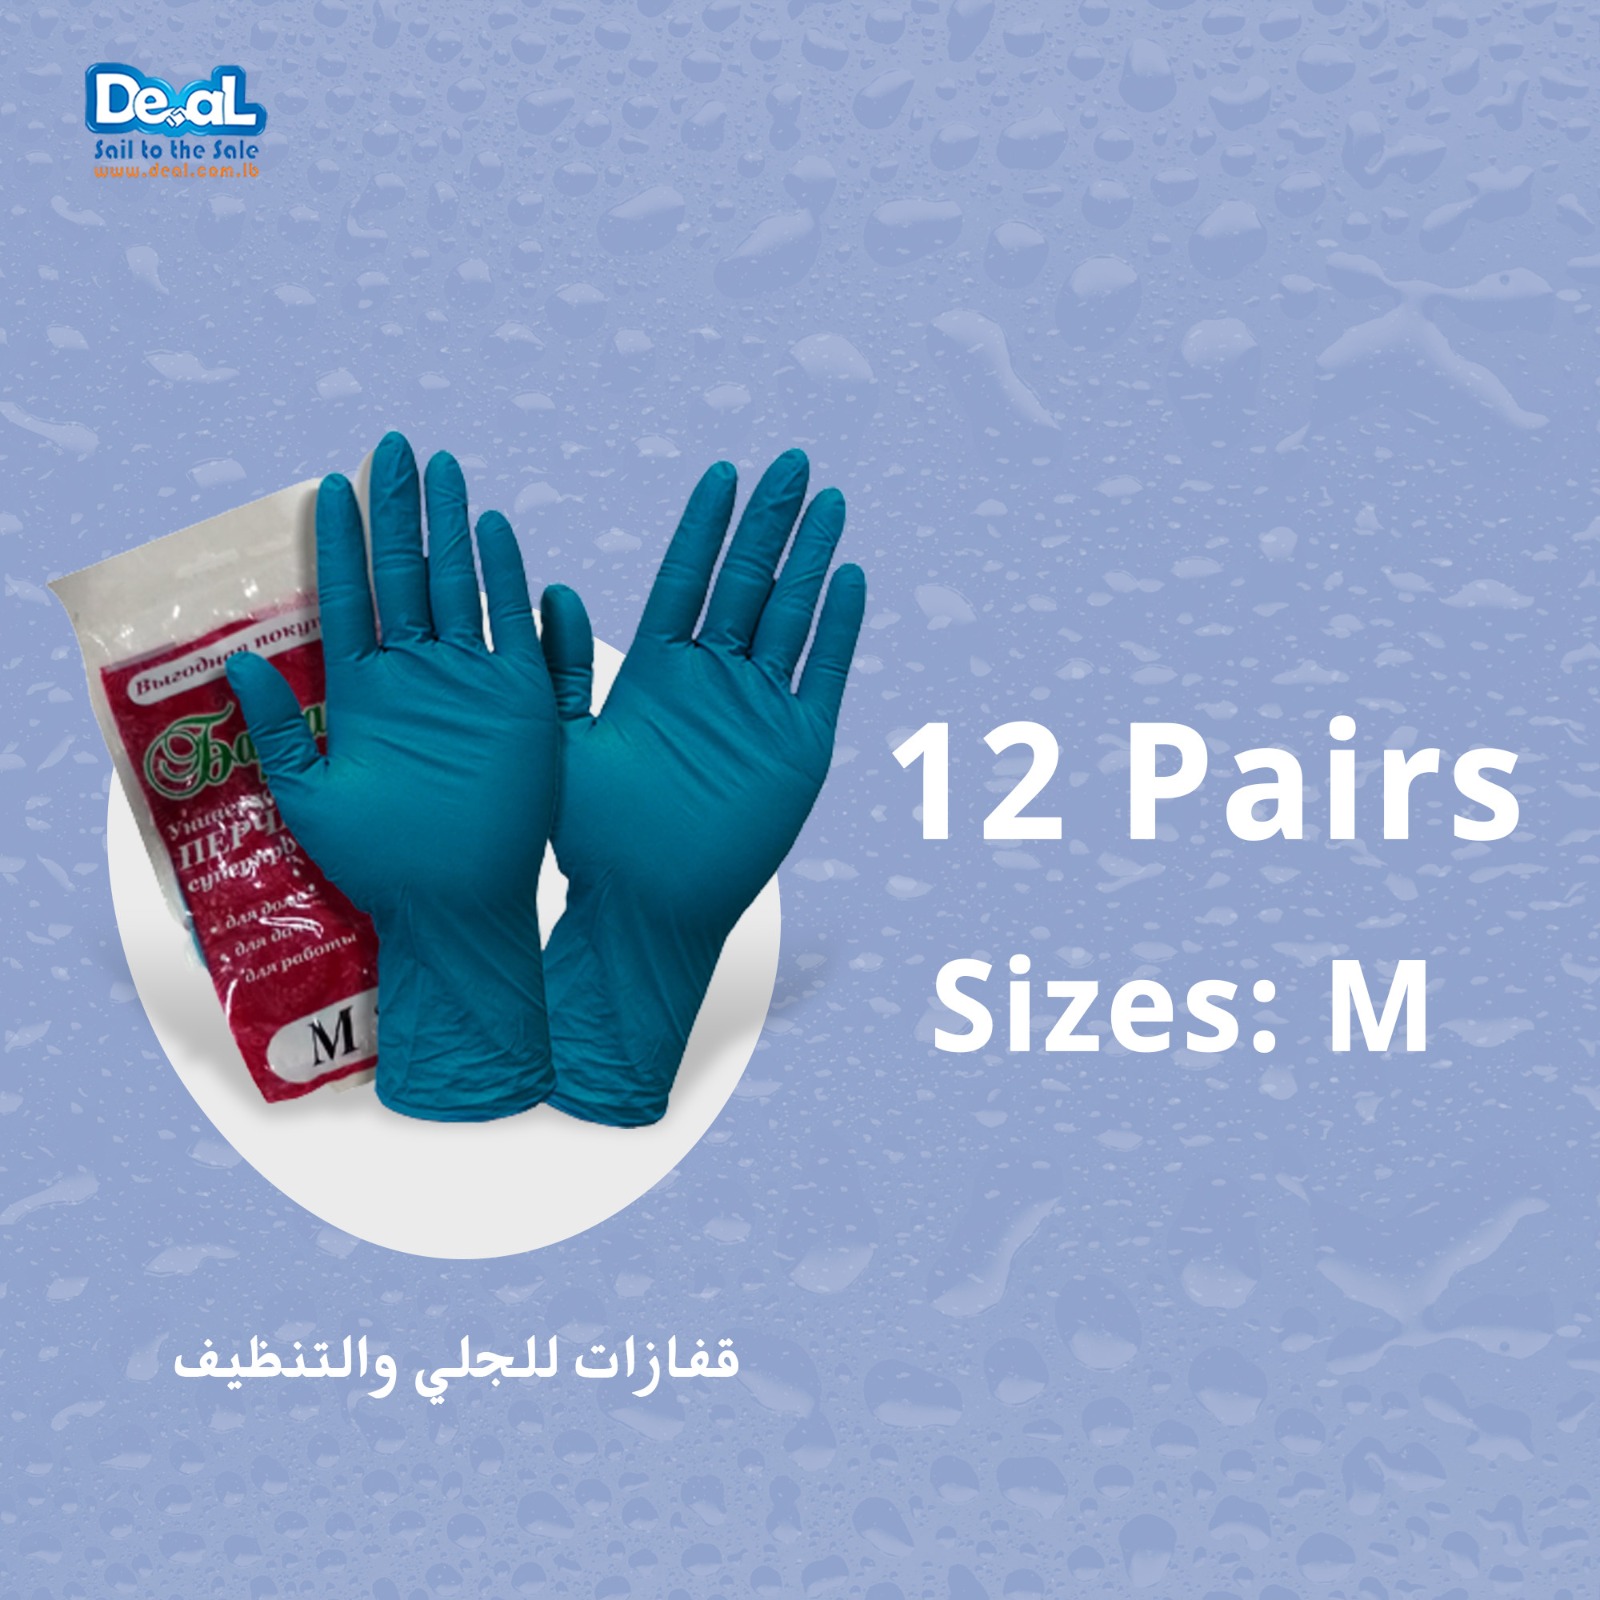 12 Pairs of Dishwashing Gloves